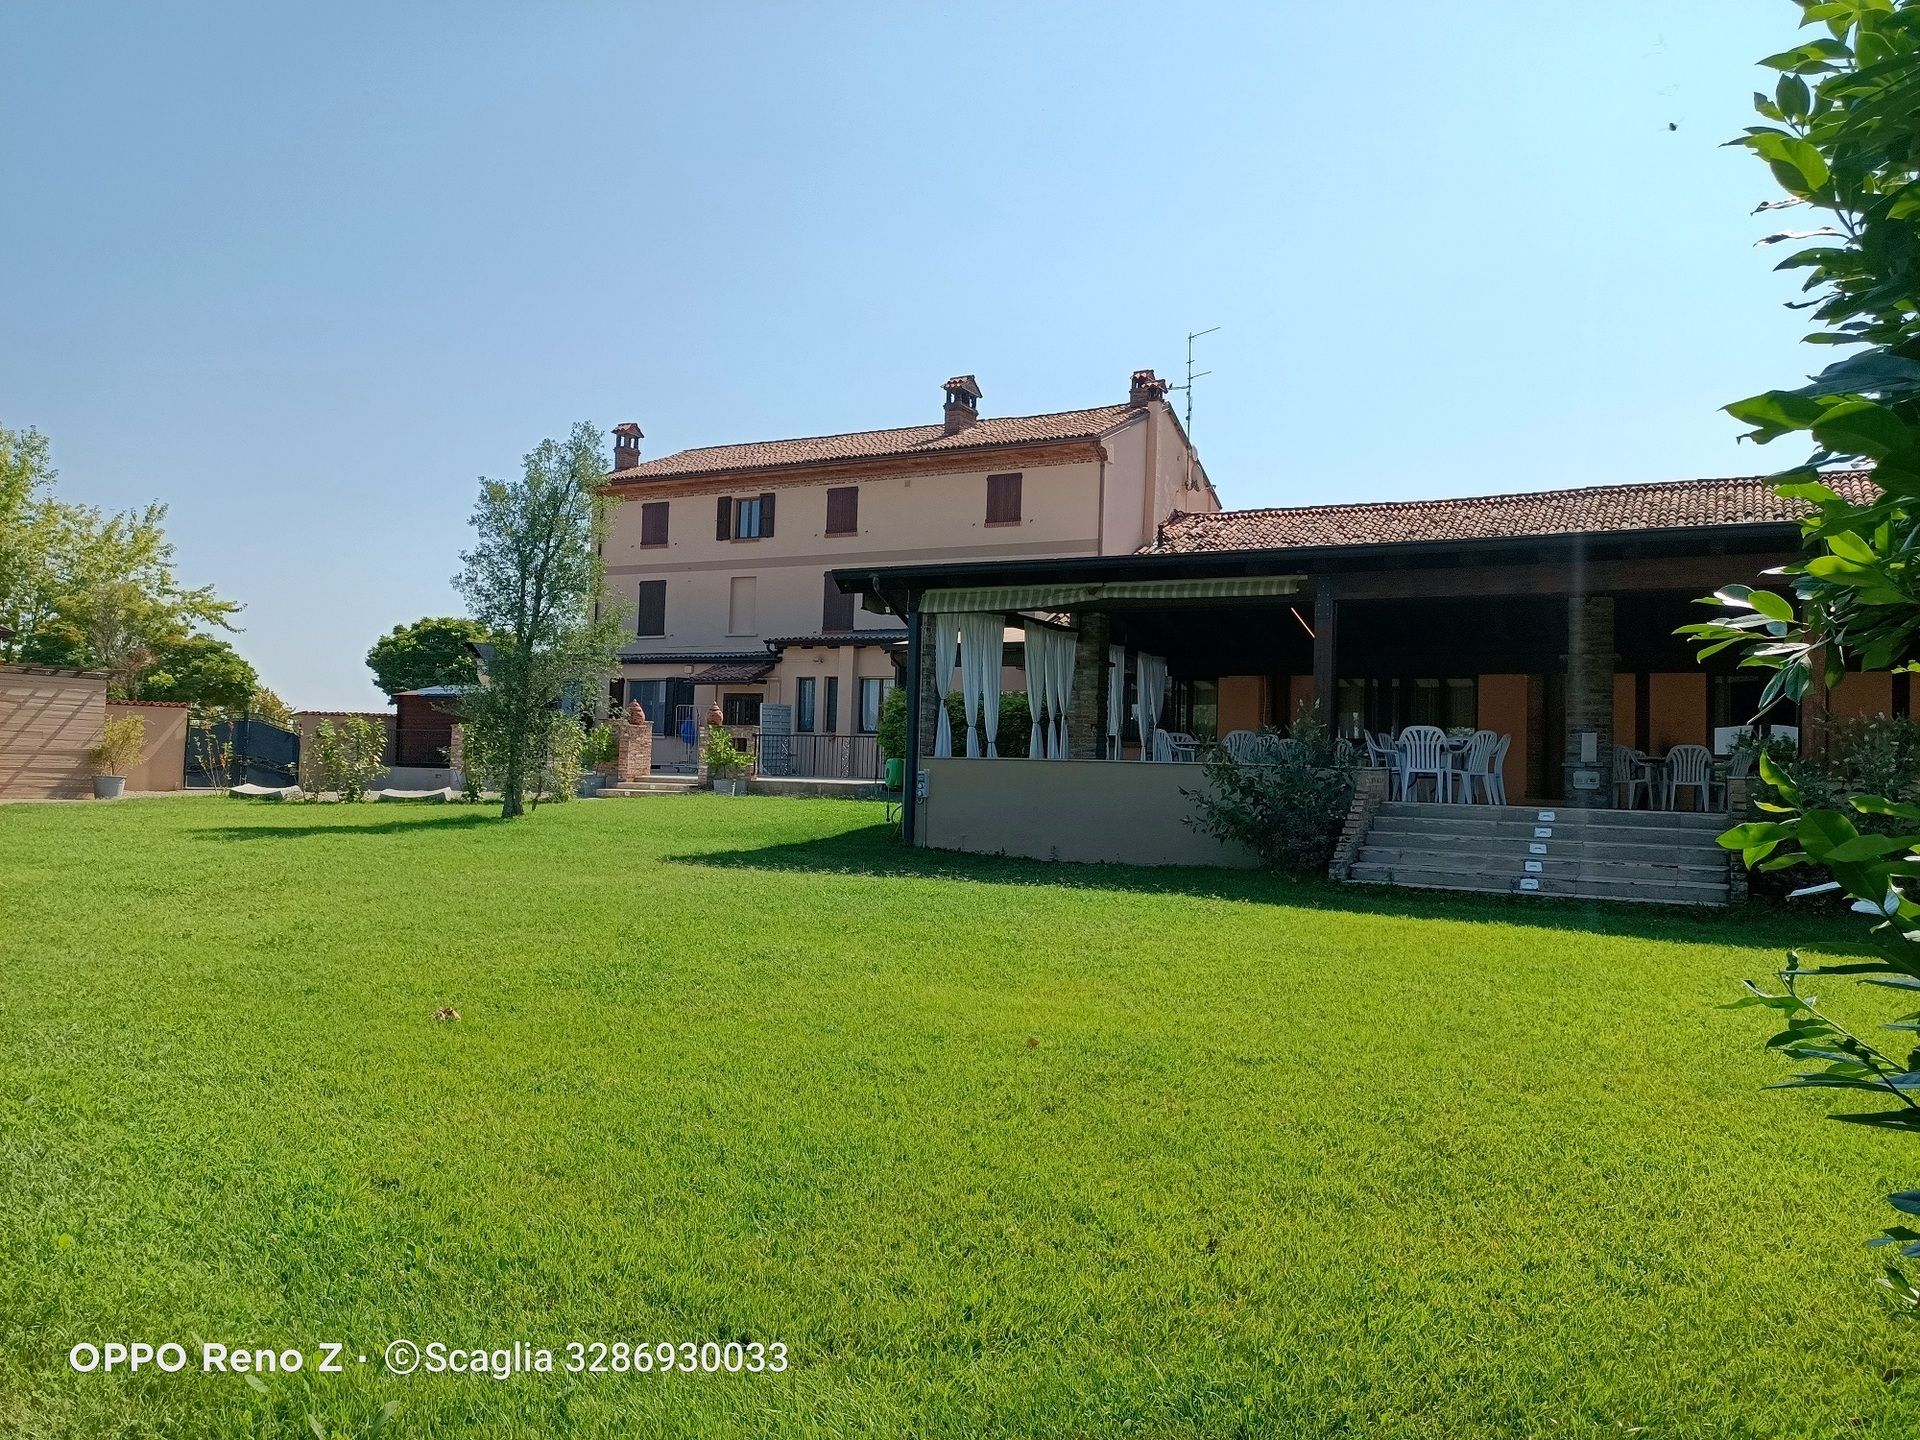 For sale cottage in quiet zone Ponte dell´Olio Emilia-Romagna